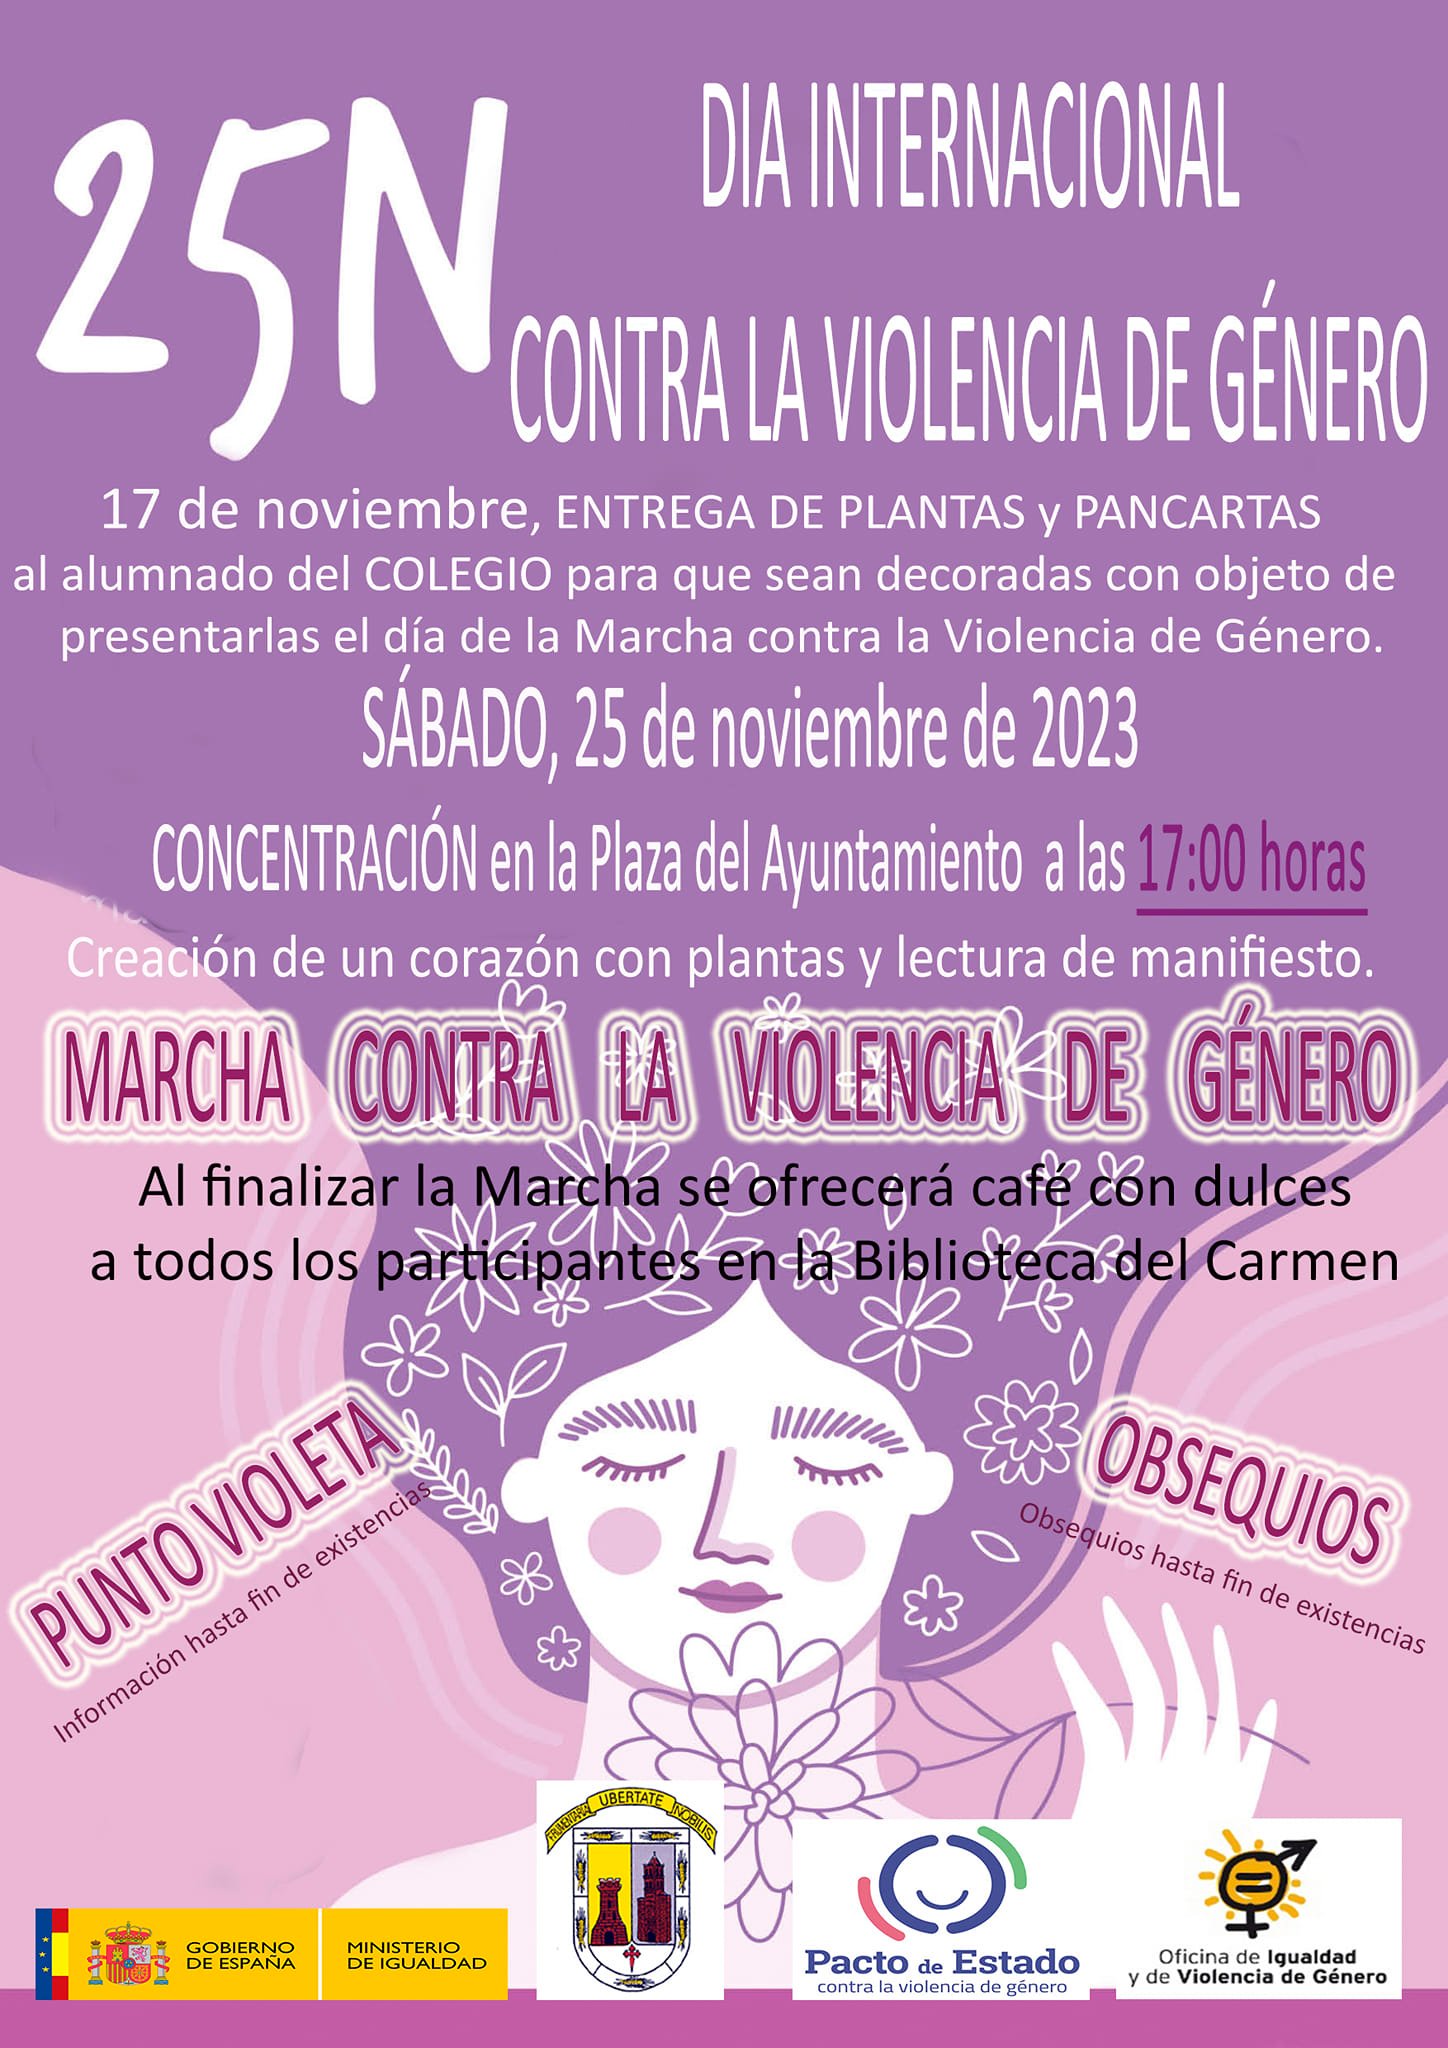 ROPA JUVENIL FEMENINA. MARCAS ORIGINALES INVIERNO. PRECIO POR UNIDAD: -  Multimarcas International